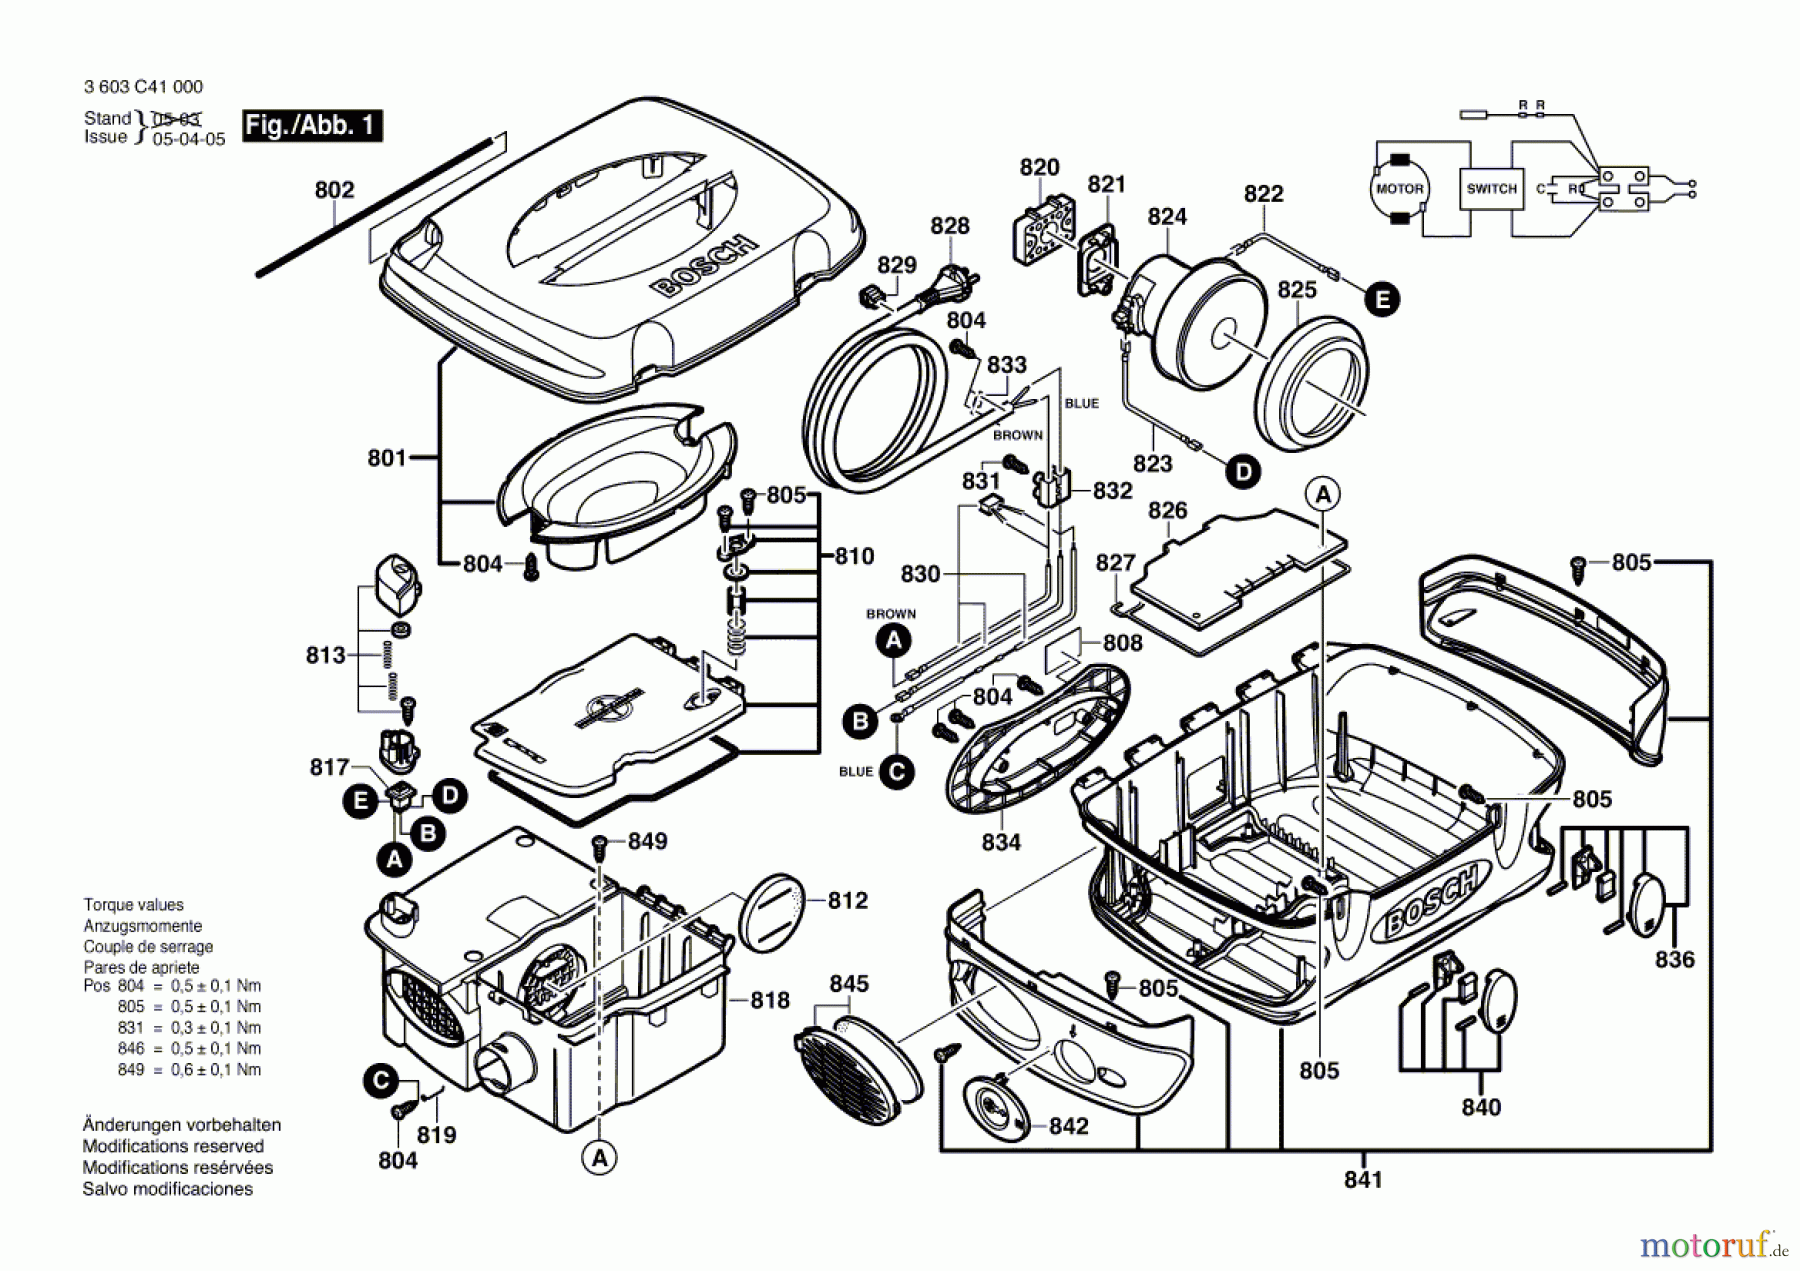  Bosch Werkzeug Allzwecksauger VENTARO 1400 Seite 1